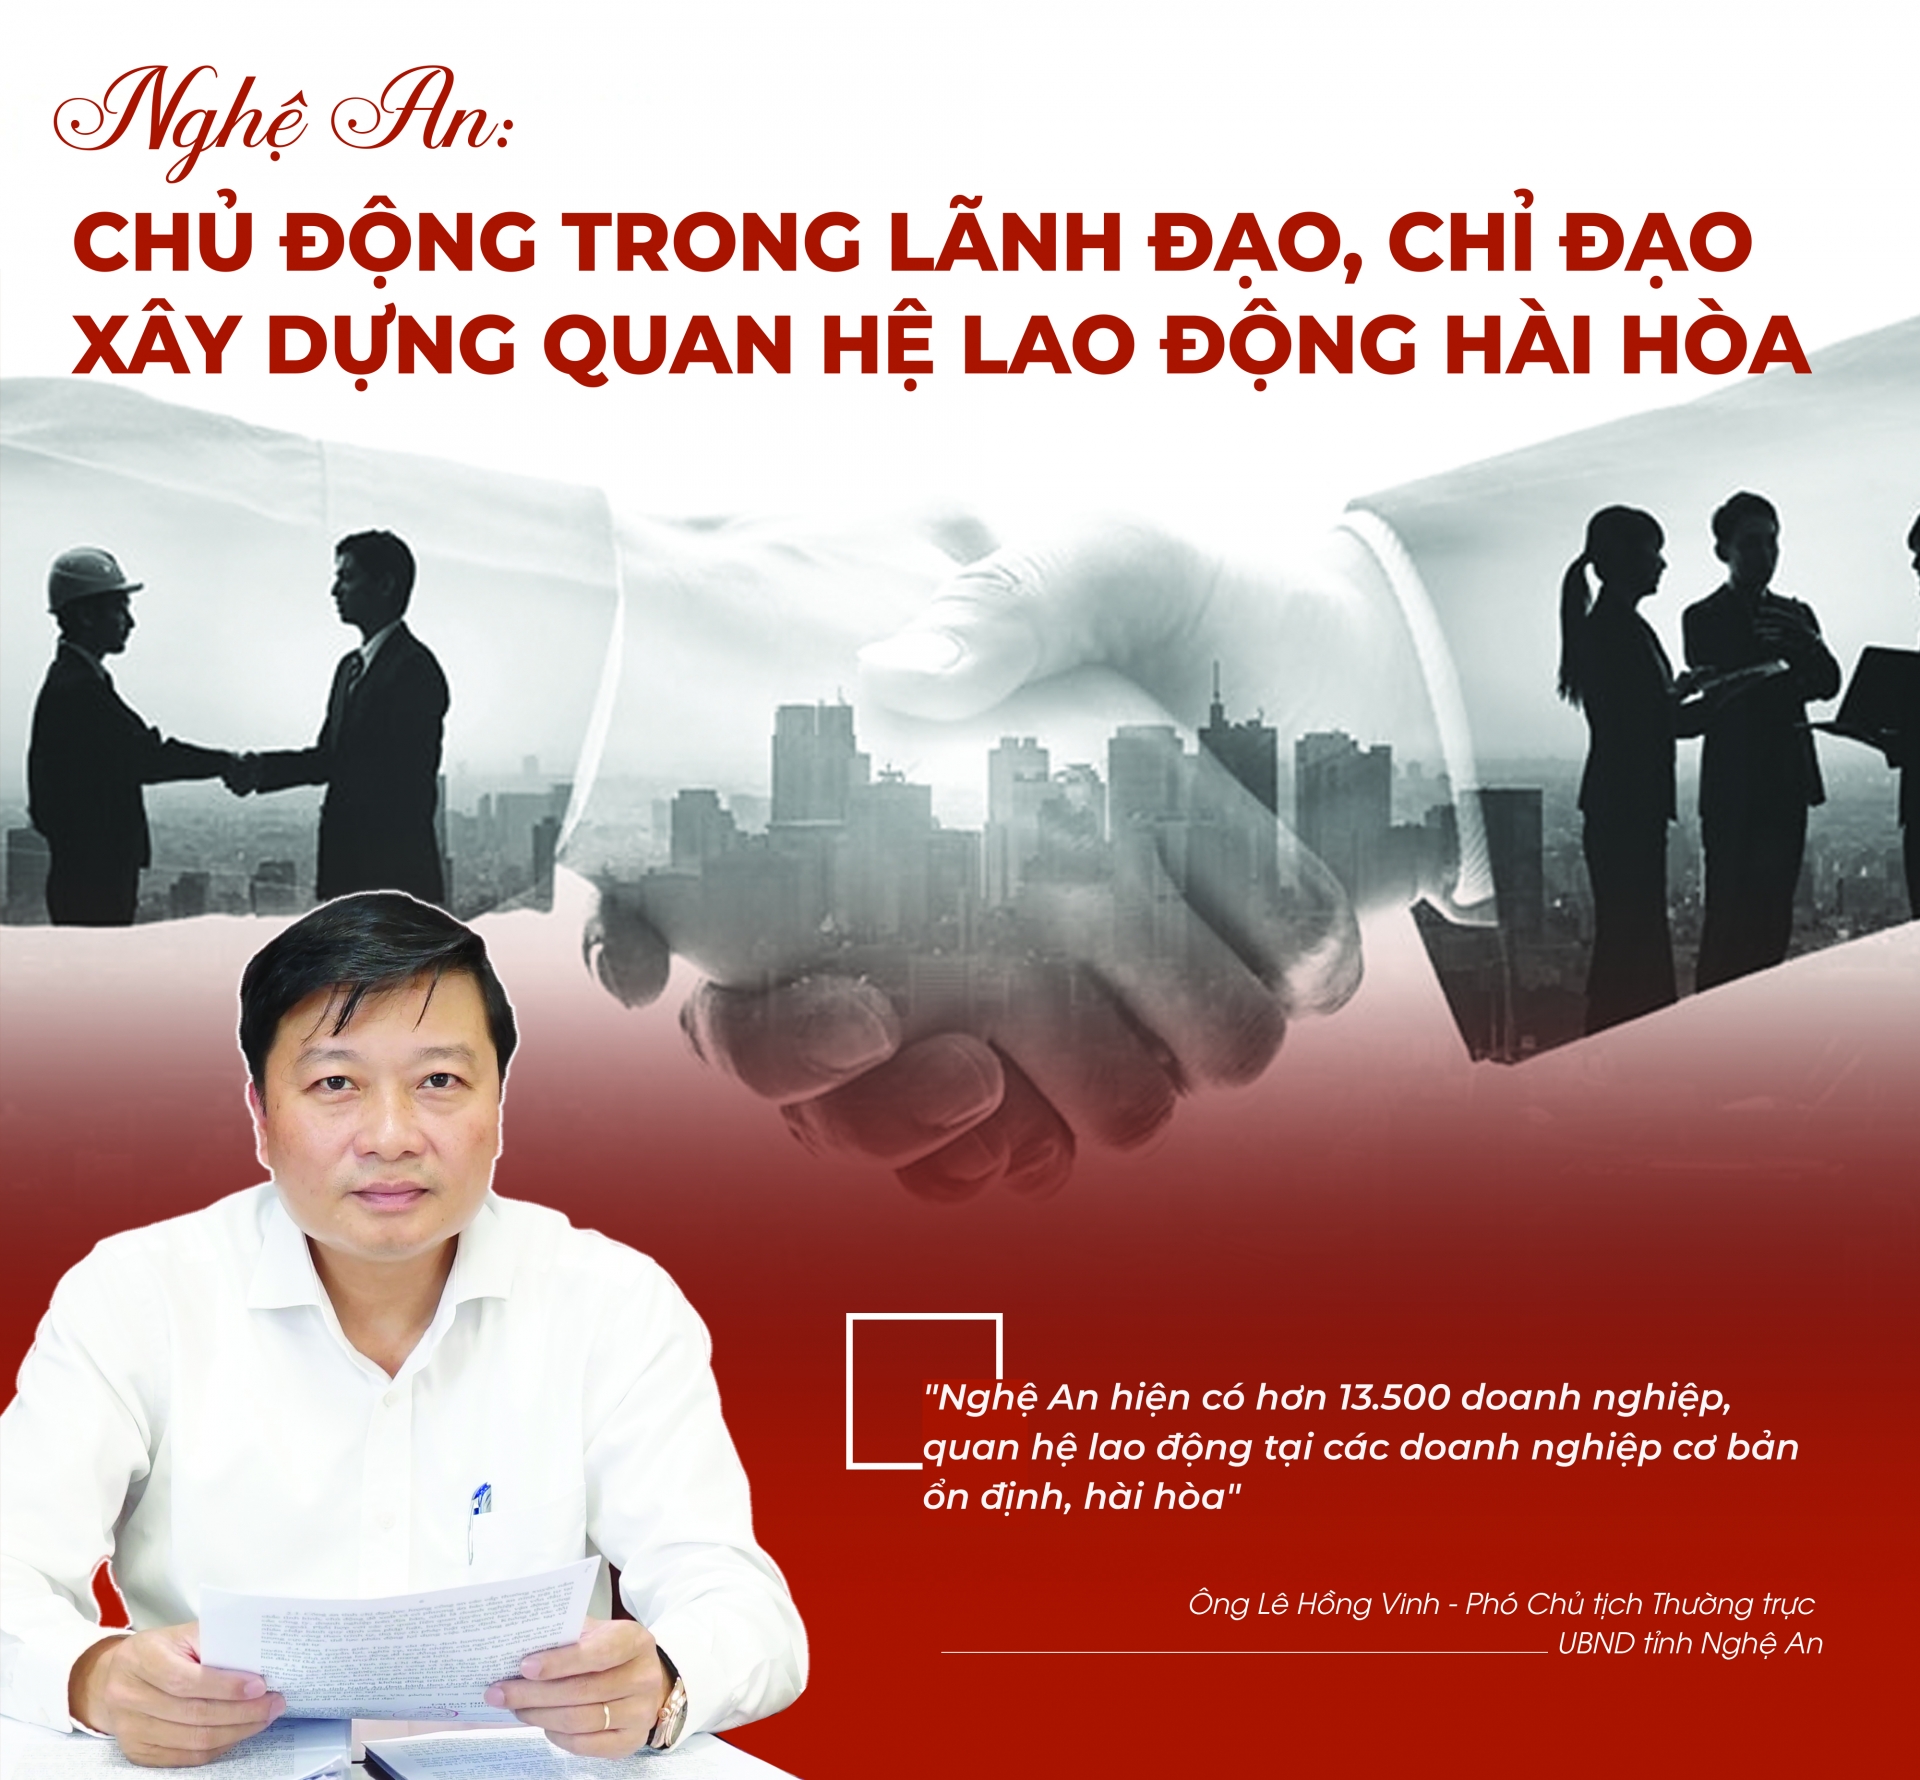 Nghệ An: Chủ động trong lãnh đạo, chỉ đạo xây dựng quan hệ lao động hài hòa